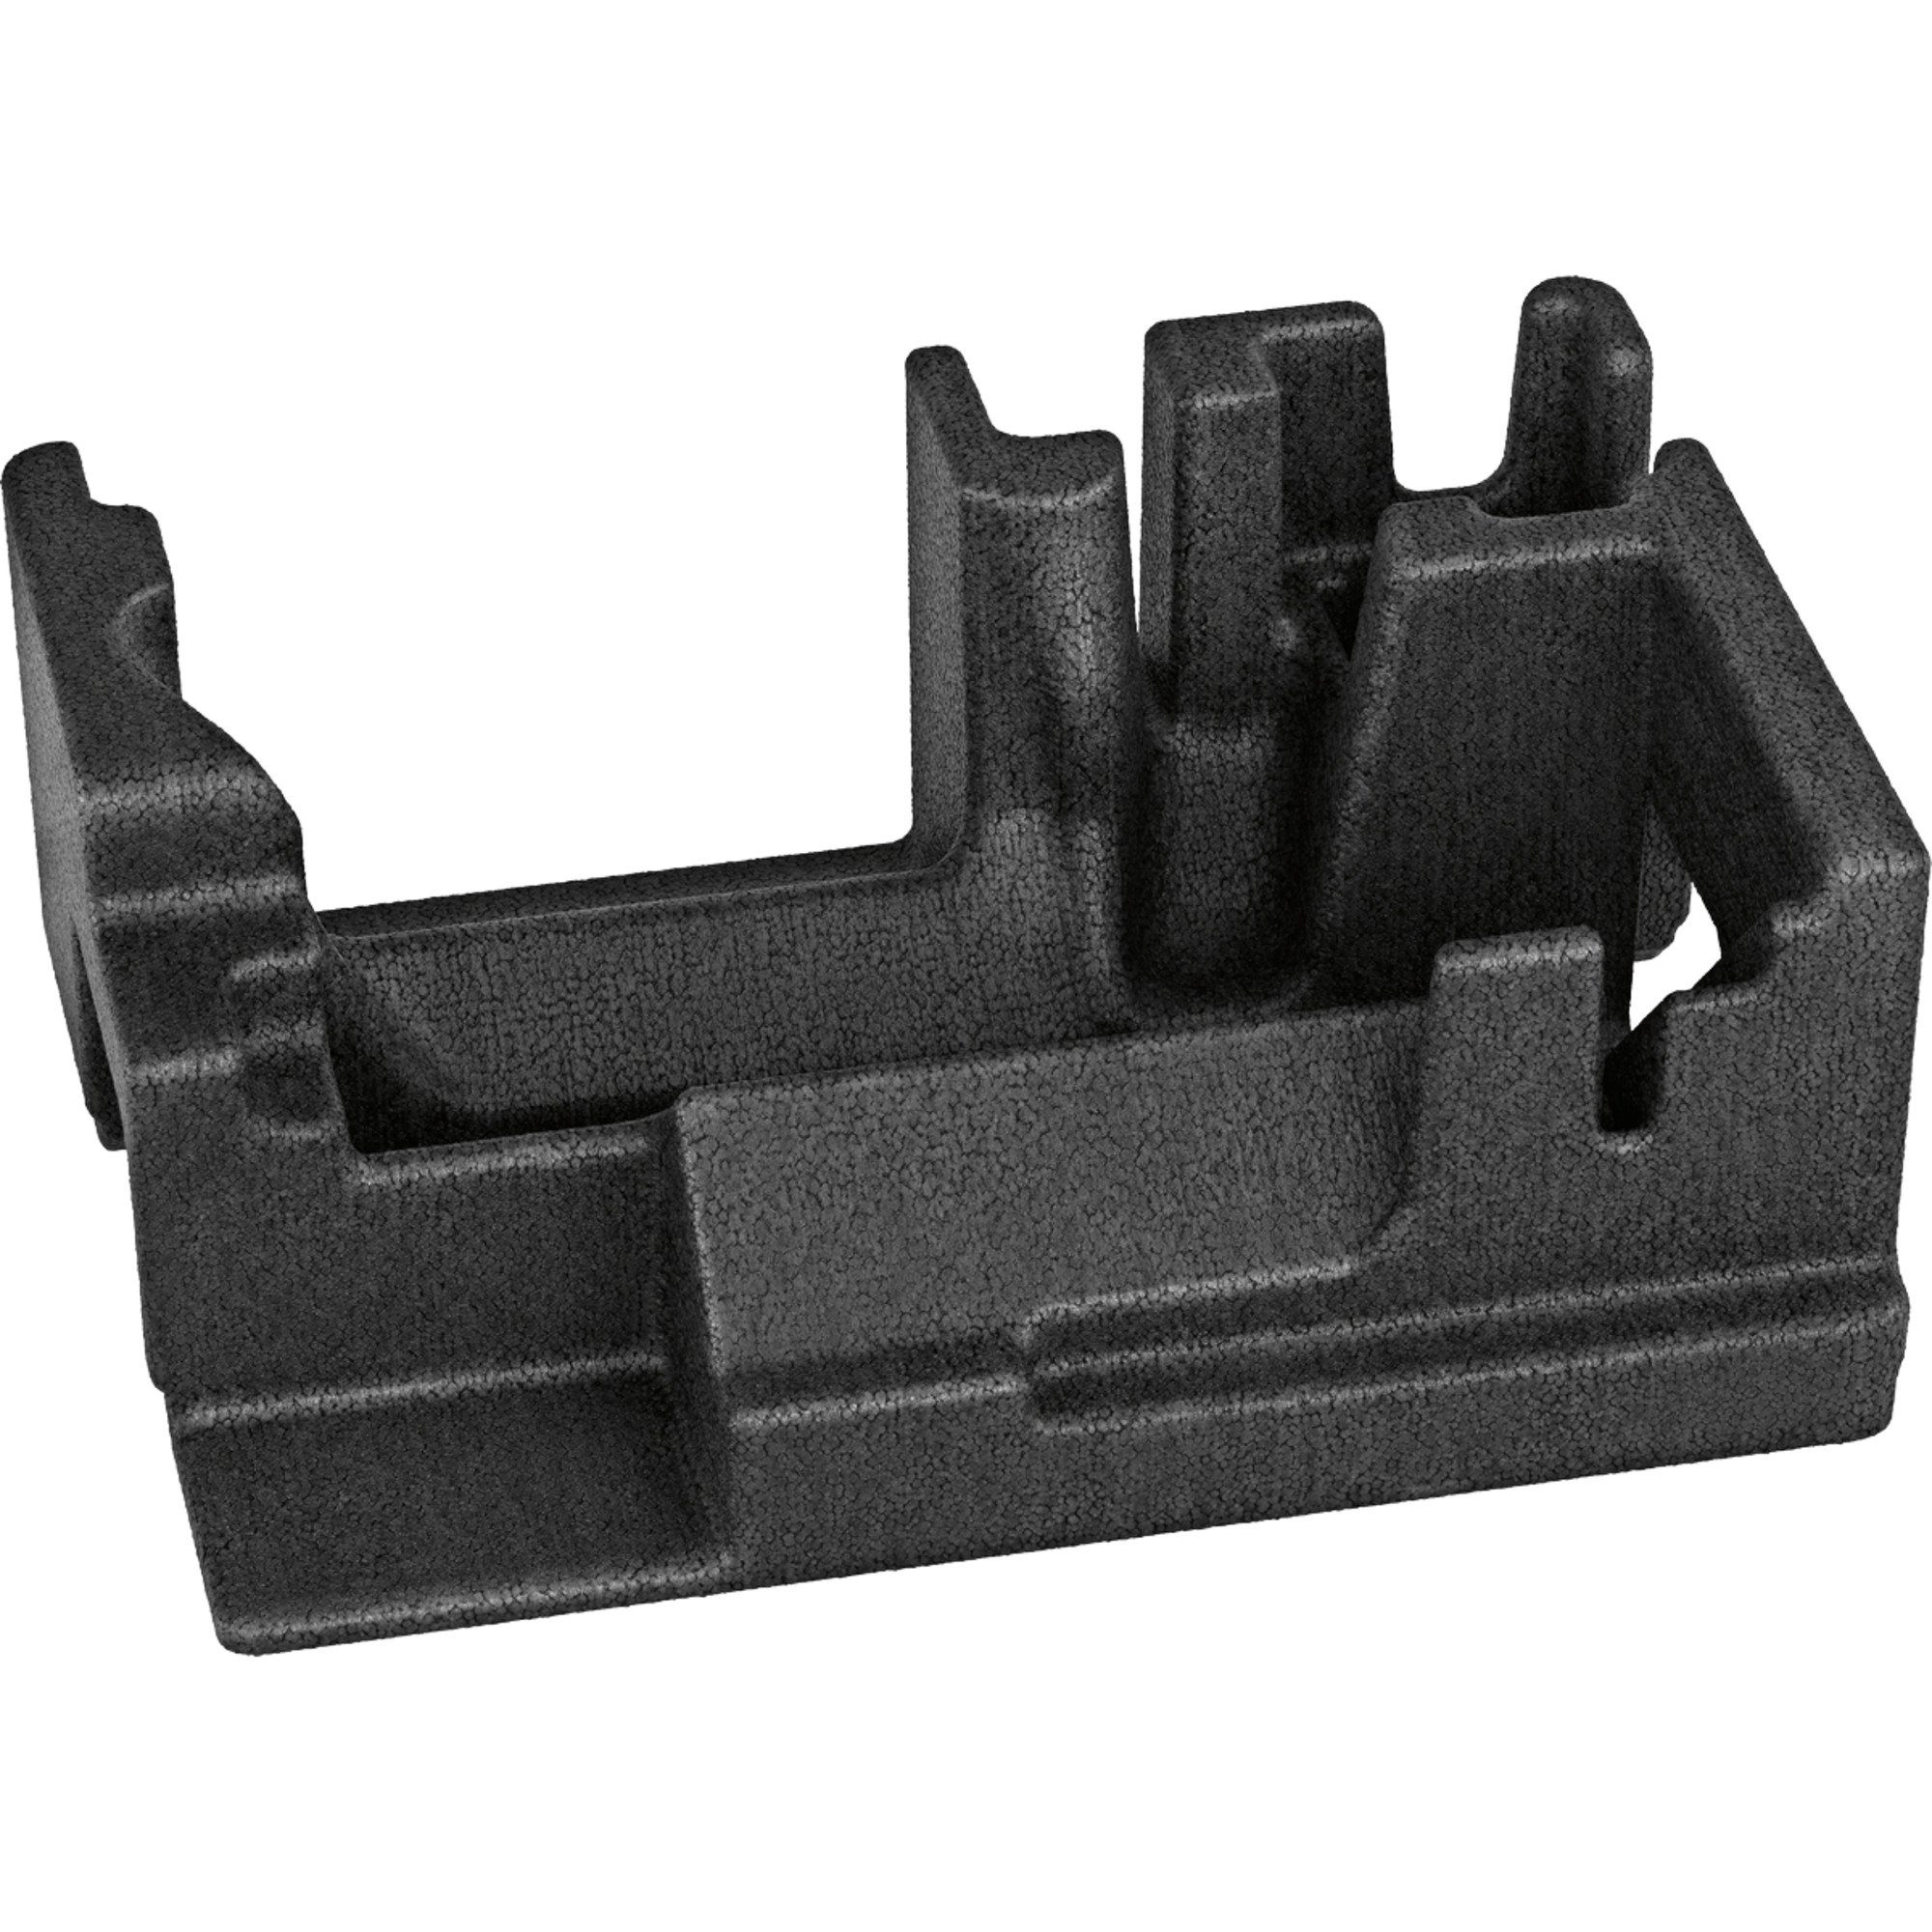 BOSCH Werkzeugbox Bosch Professional Einlage für Akku-Handkreissäge | Werkzeugkoffer